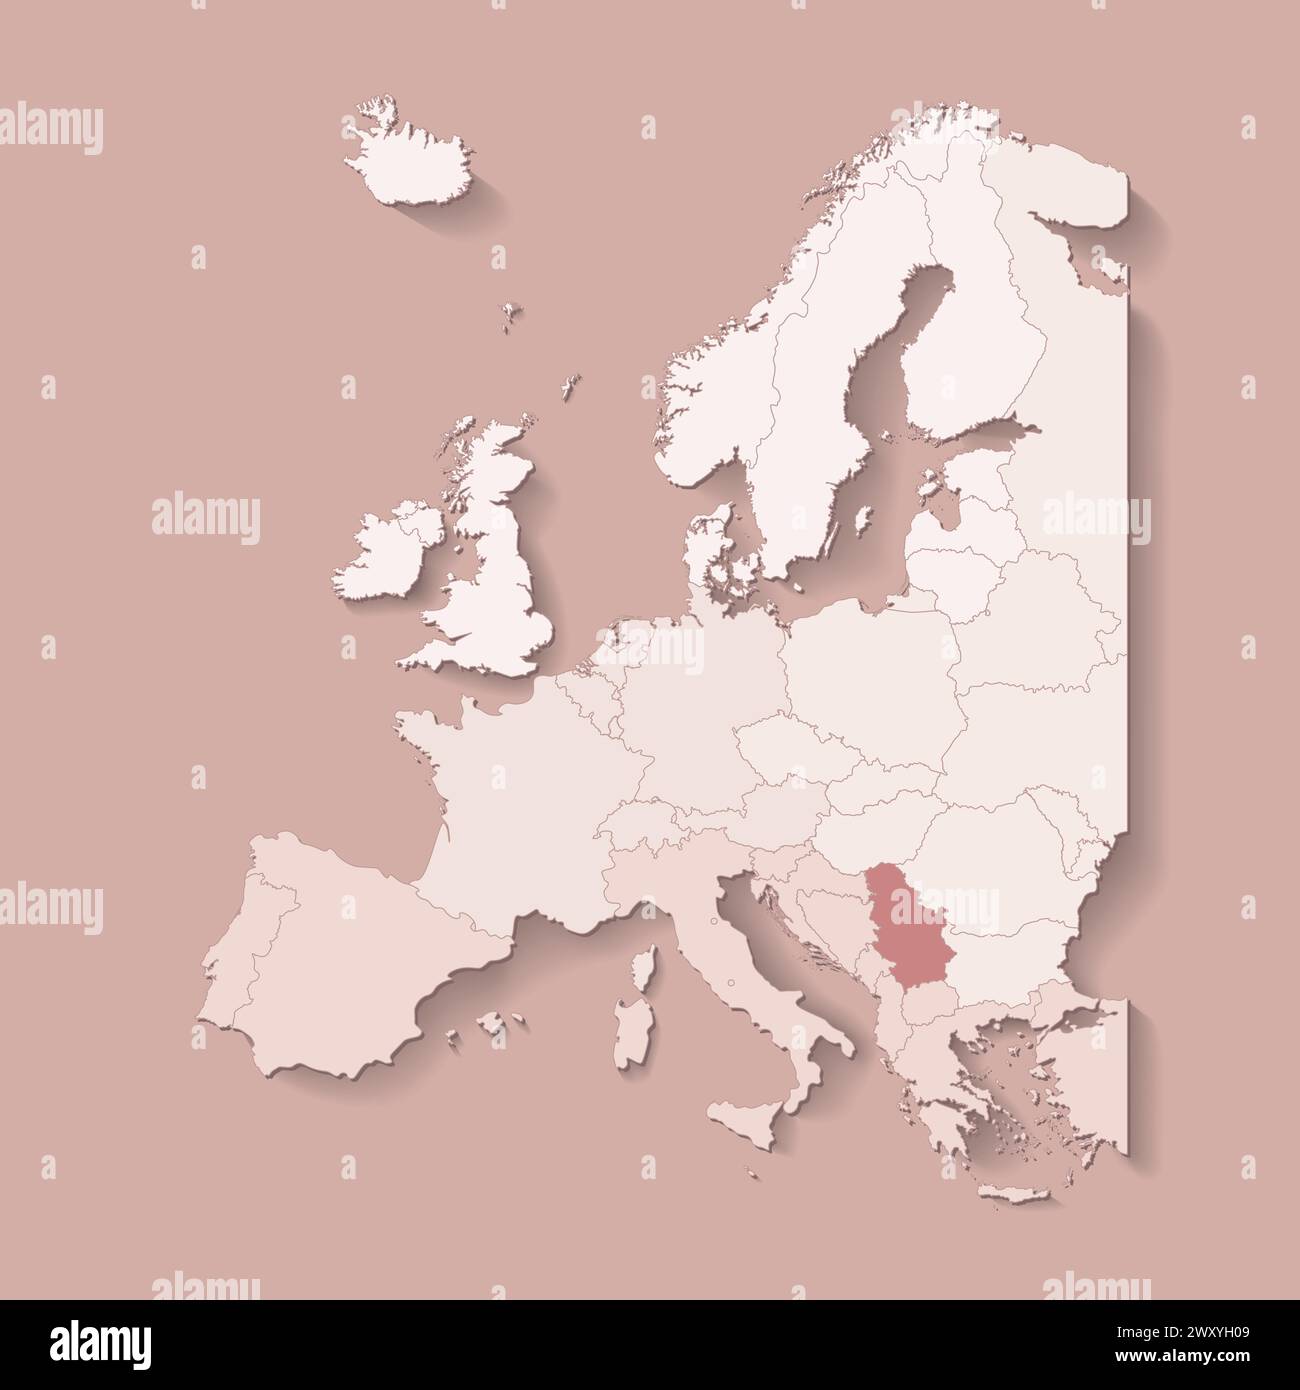 Illustrazione vettoriale con terra europea con confini di stati e paese contrassegnato Serbia. Mappa politica in colori marroni con occidentale, sud e così via Illustrazione Vettoriale